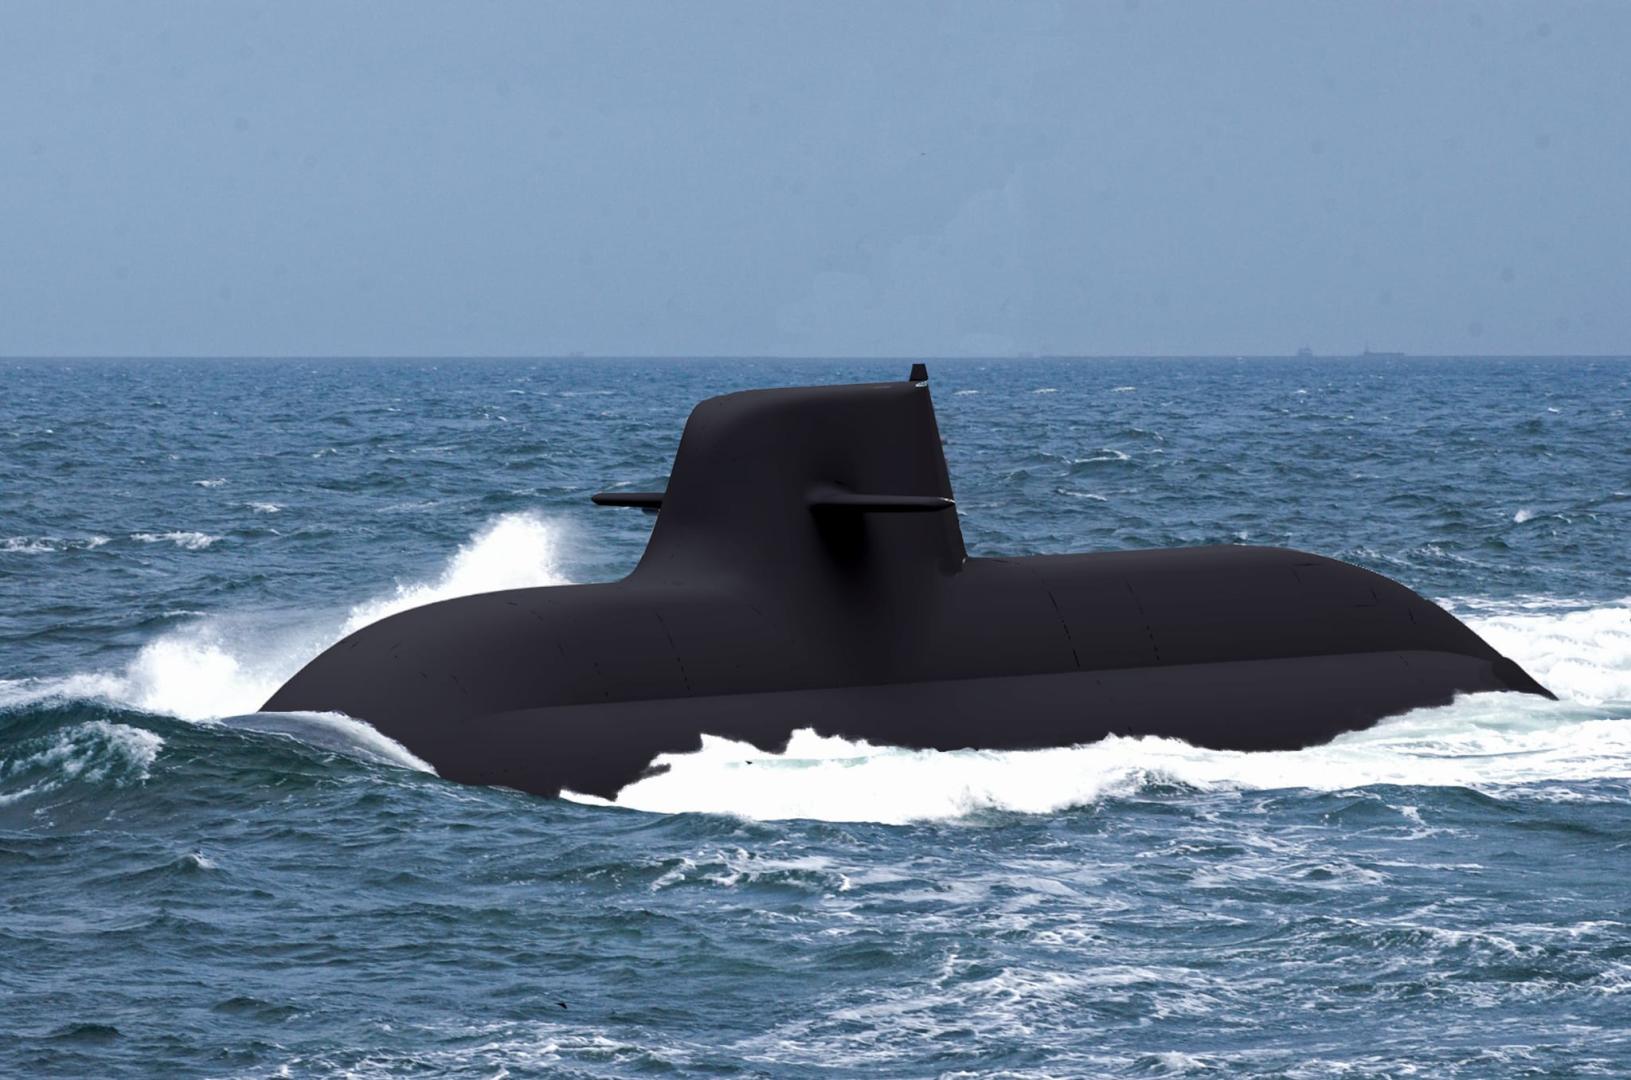 Fincantieri: 2 new-generation submarines for the Italian Navy